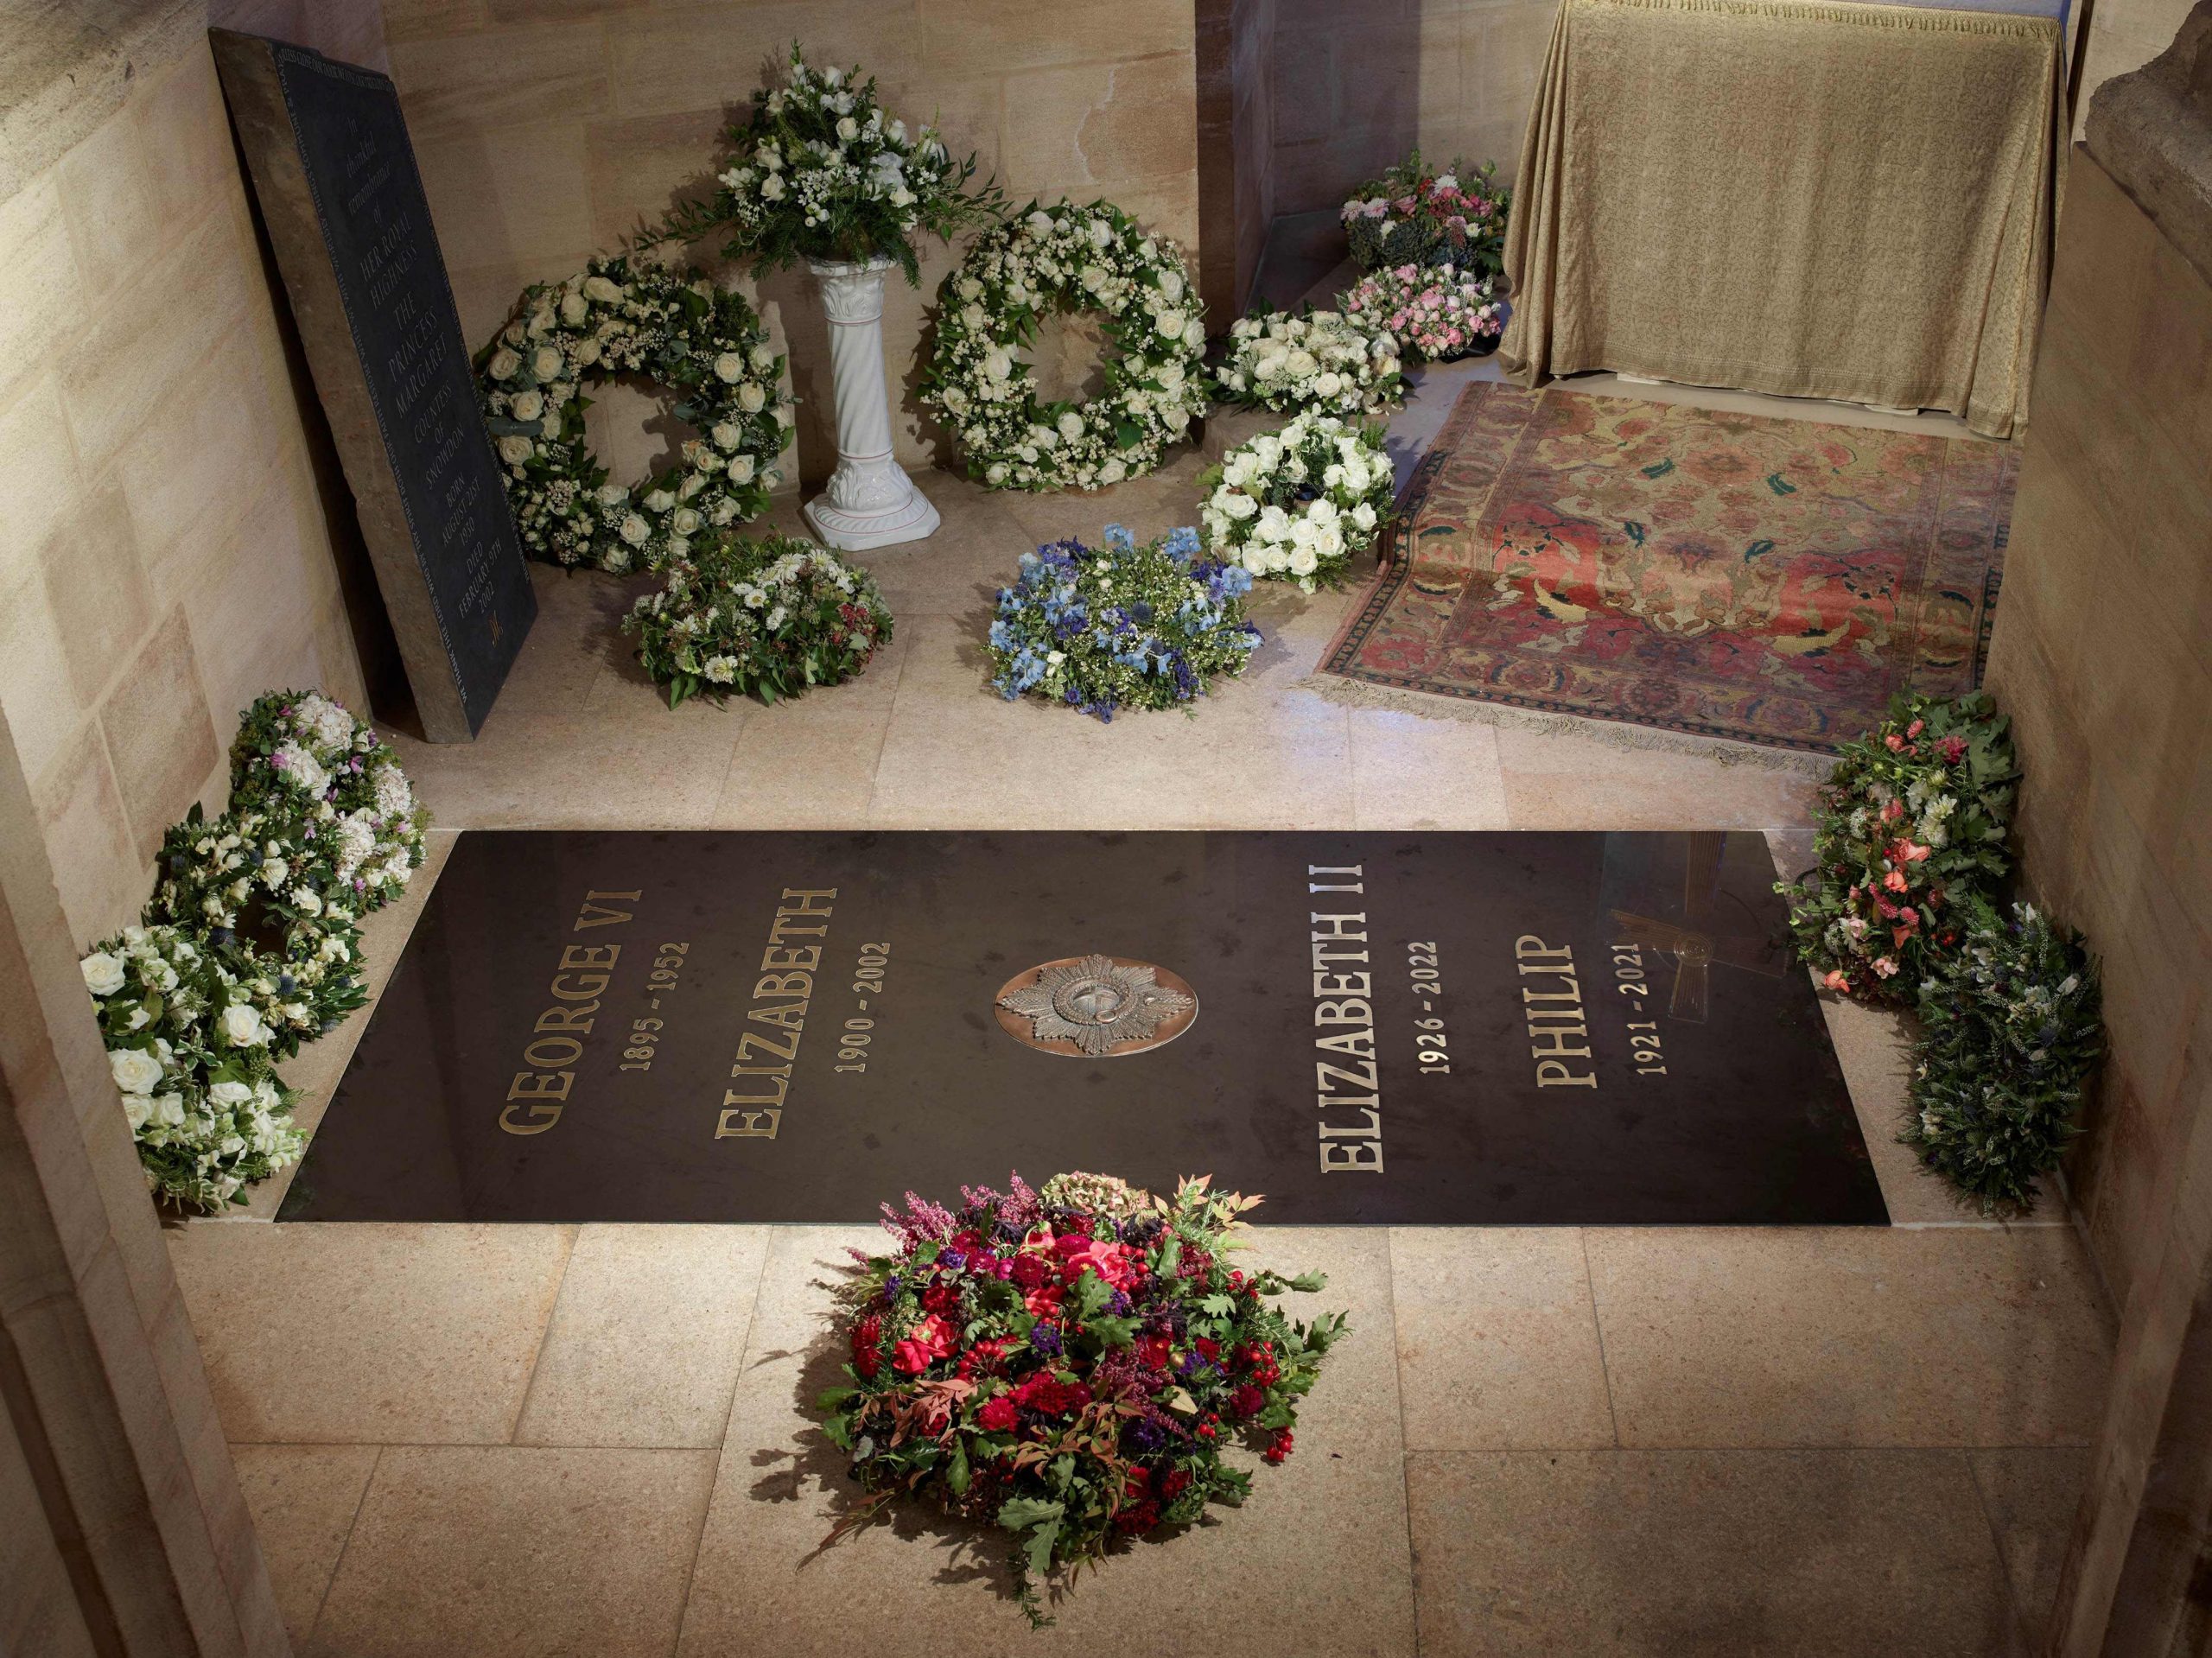  白金汉宫公布英女王墓碑 由比利时大理石制成